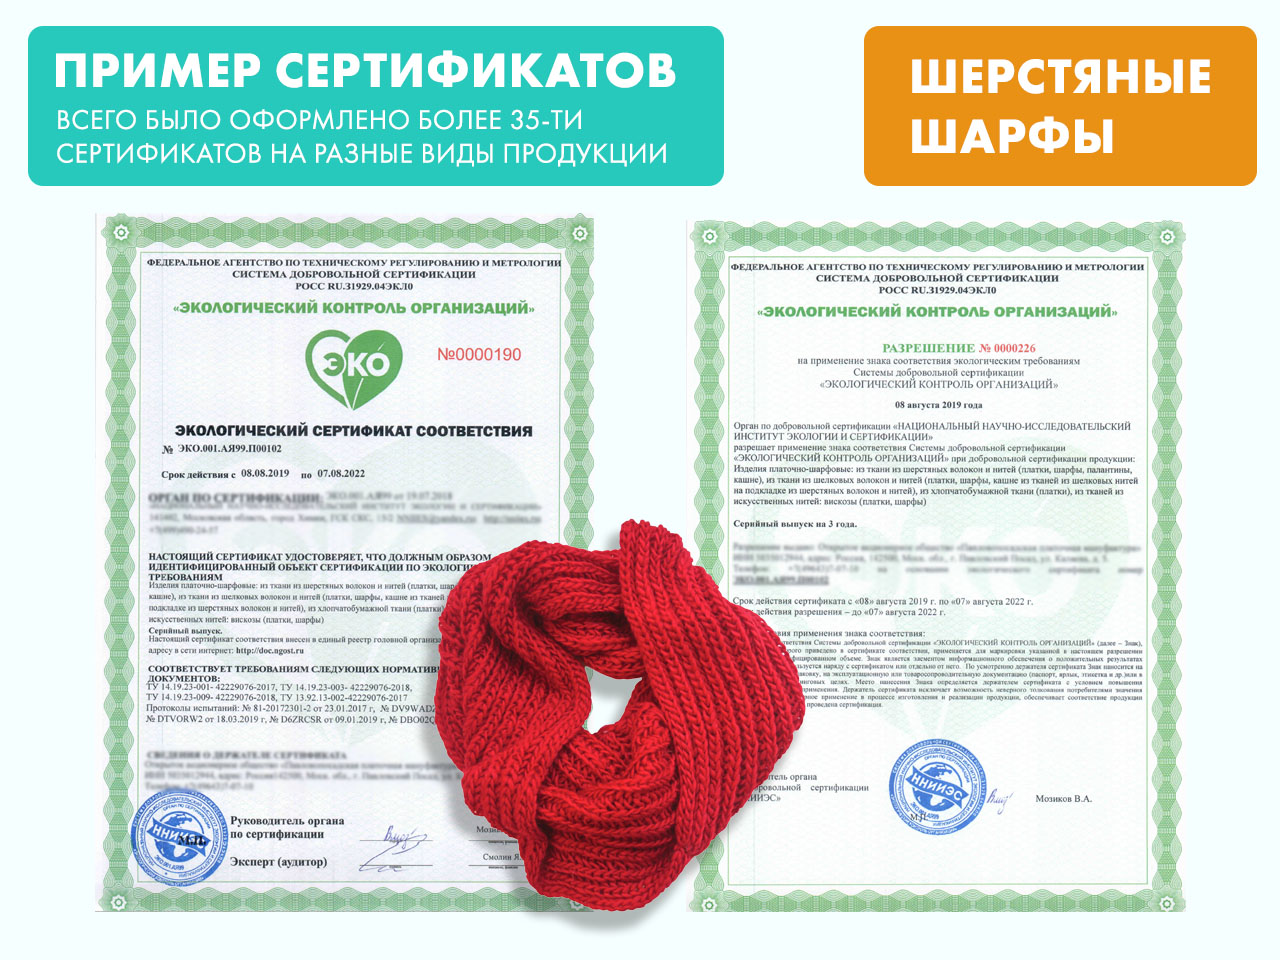 Сертификация полотенец. Сертификат соответствия на продукцию. Сертификат соответствия эко. Экологическая сертификация. Сертификация и декларирование.